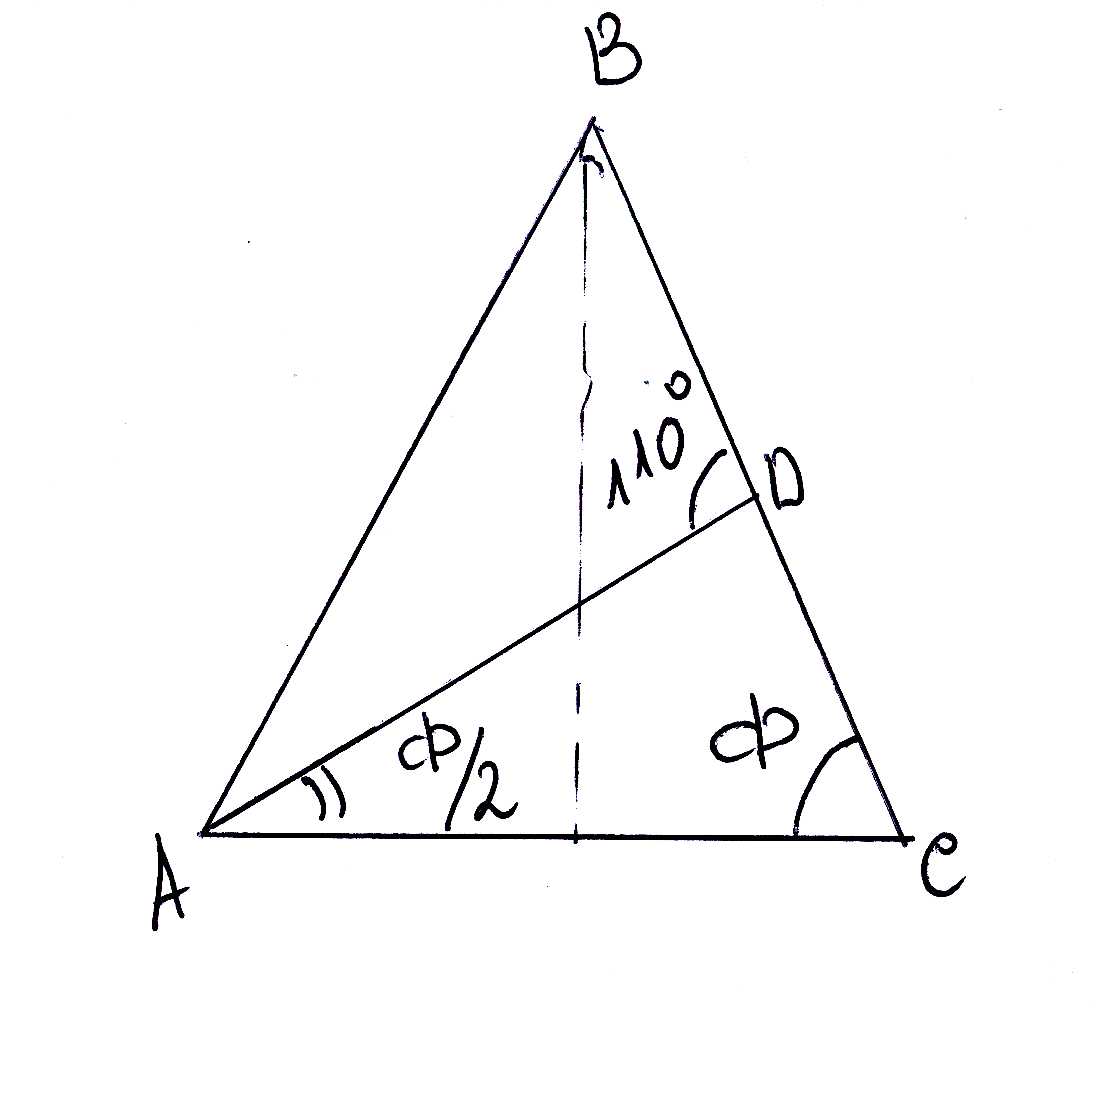 На рисунке в равнобедренном треугольнике abc с основанием ac угол в равен 120 а высота